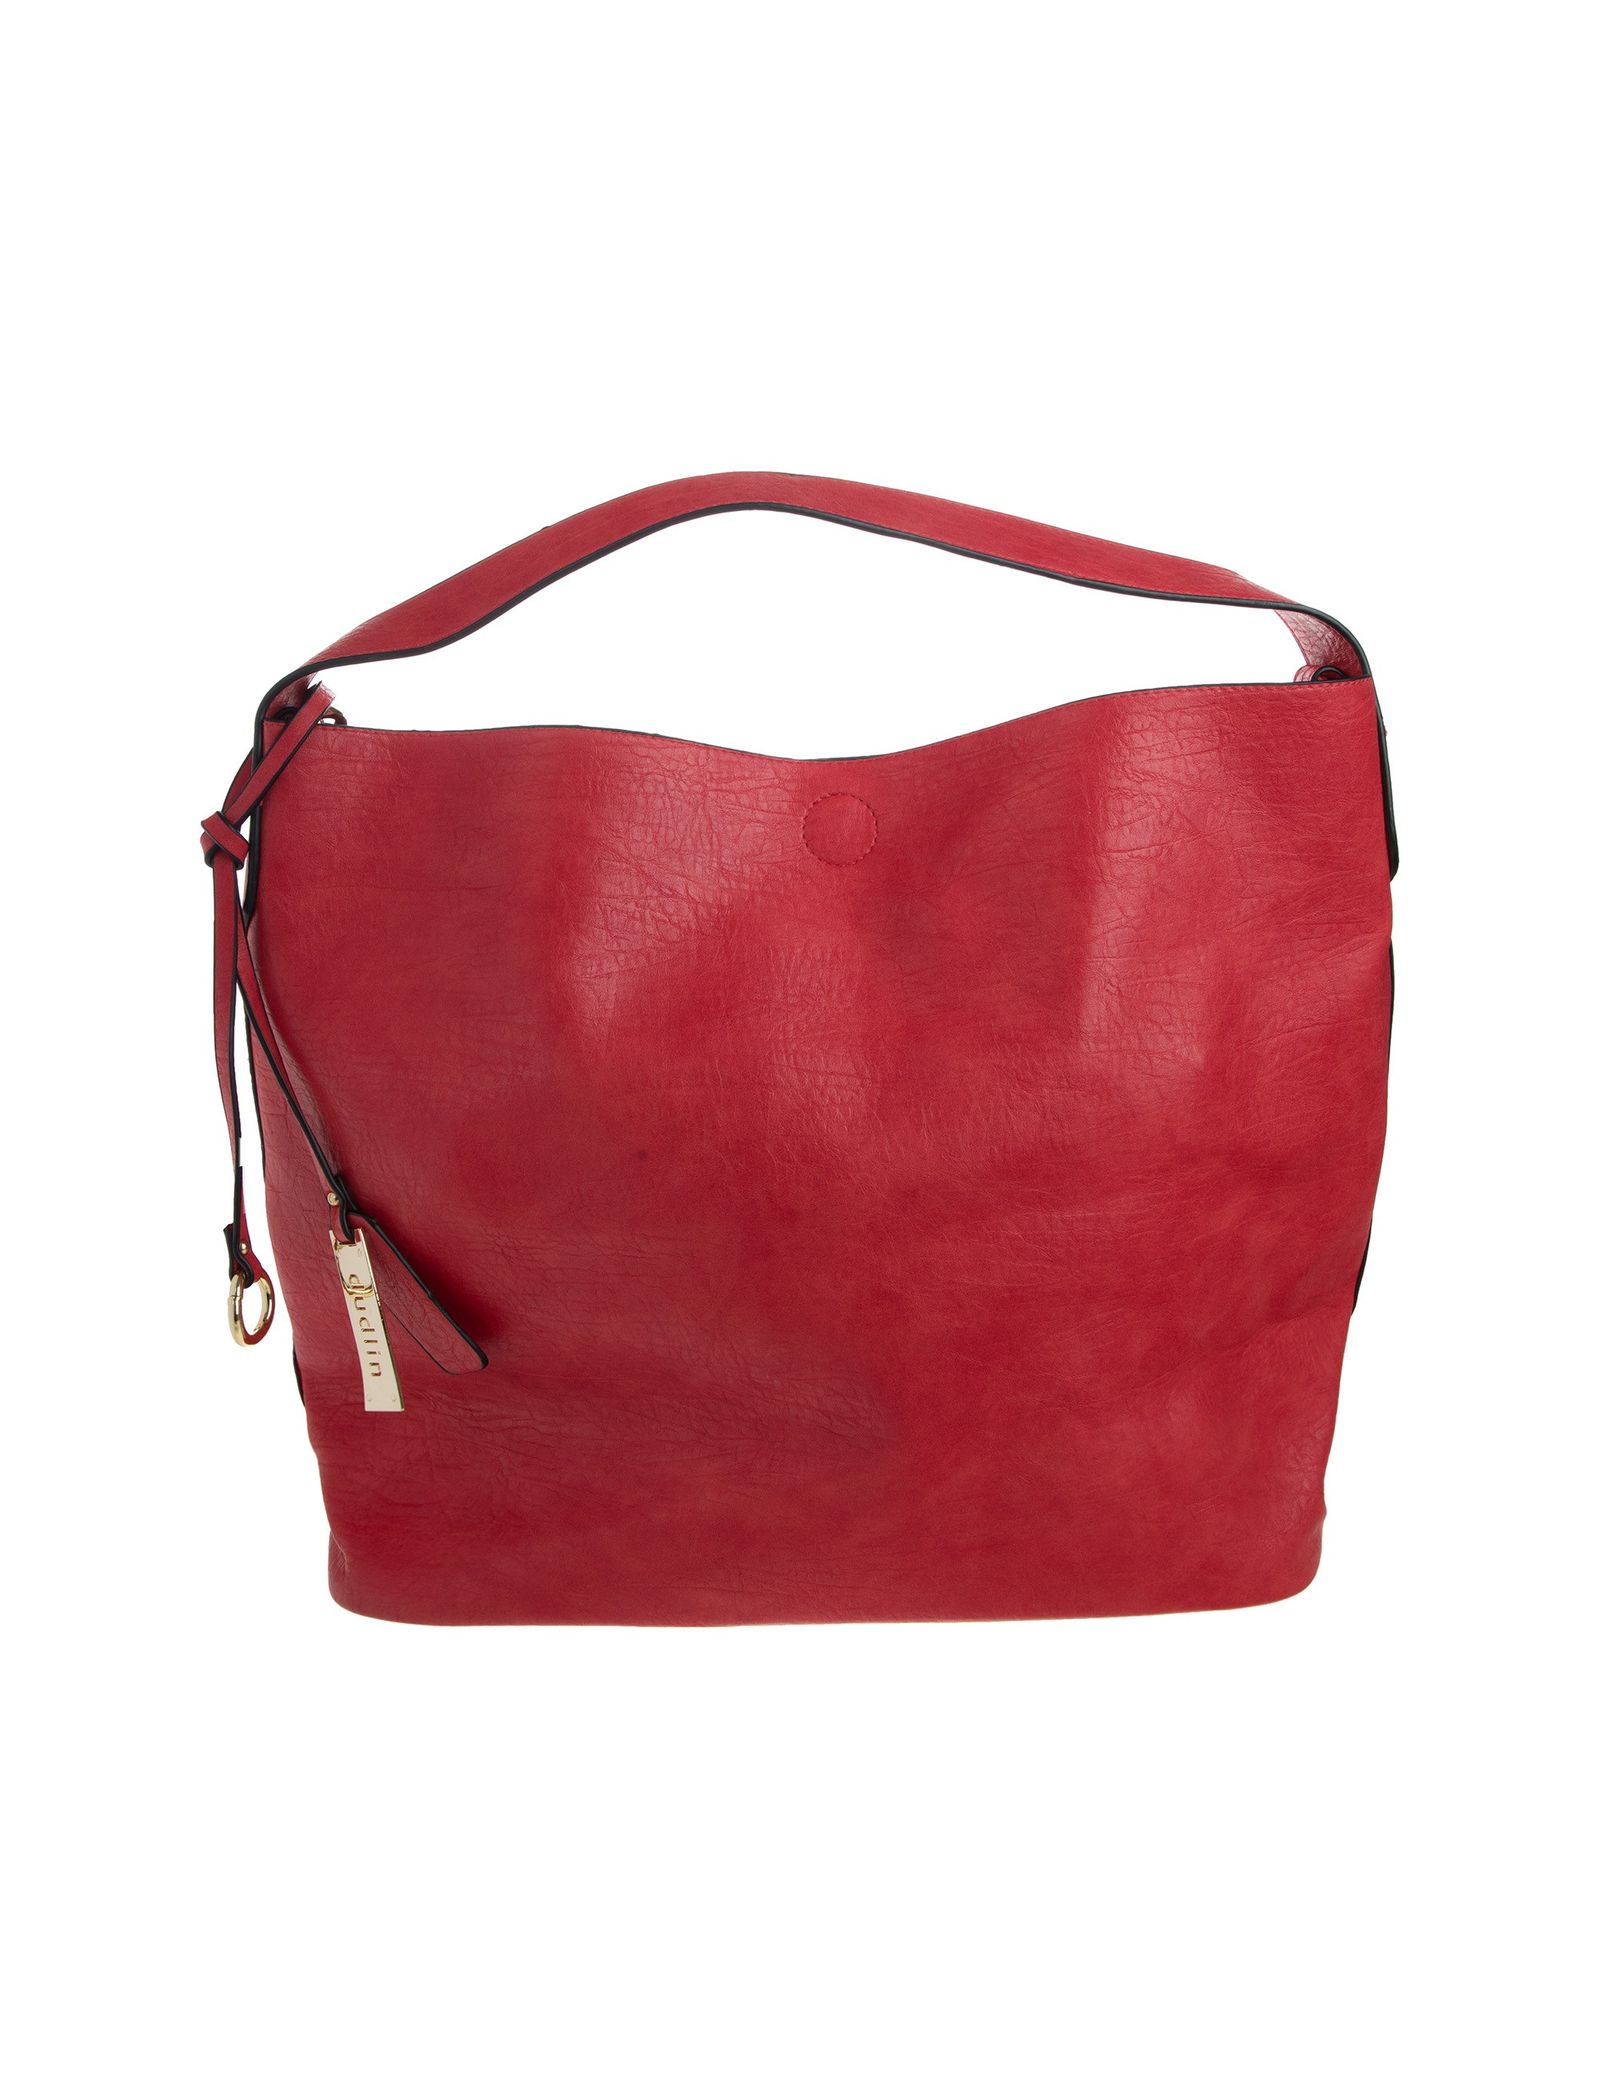 کیف دستی روزمره زنانه - دادلین تک سایز - قرمز - 1